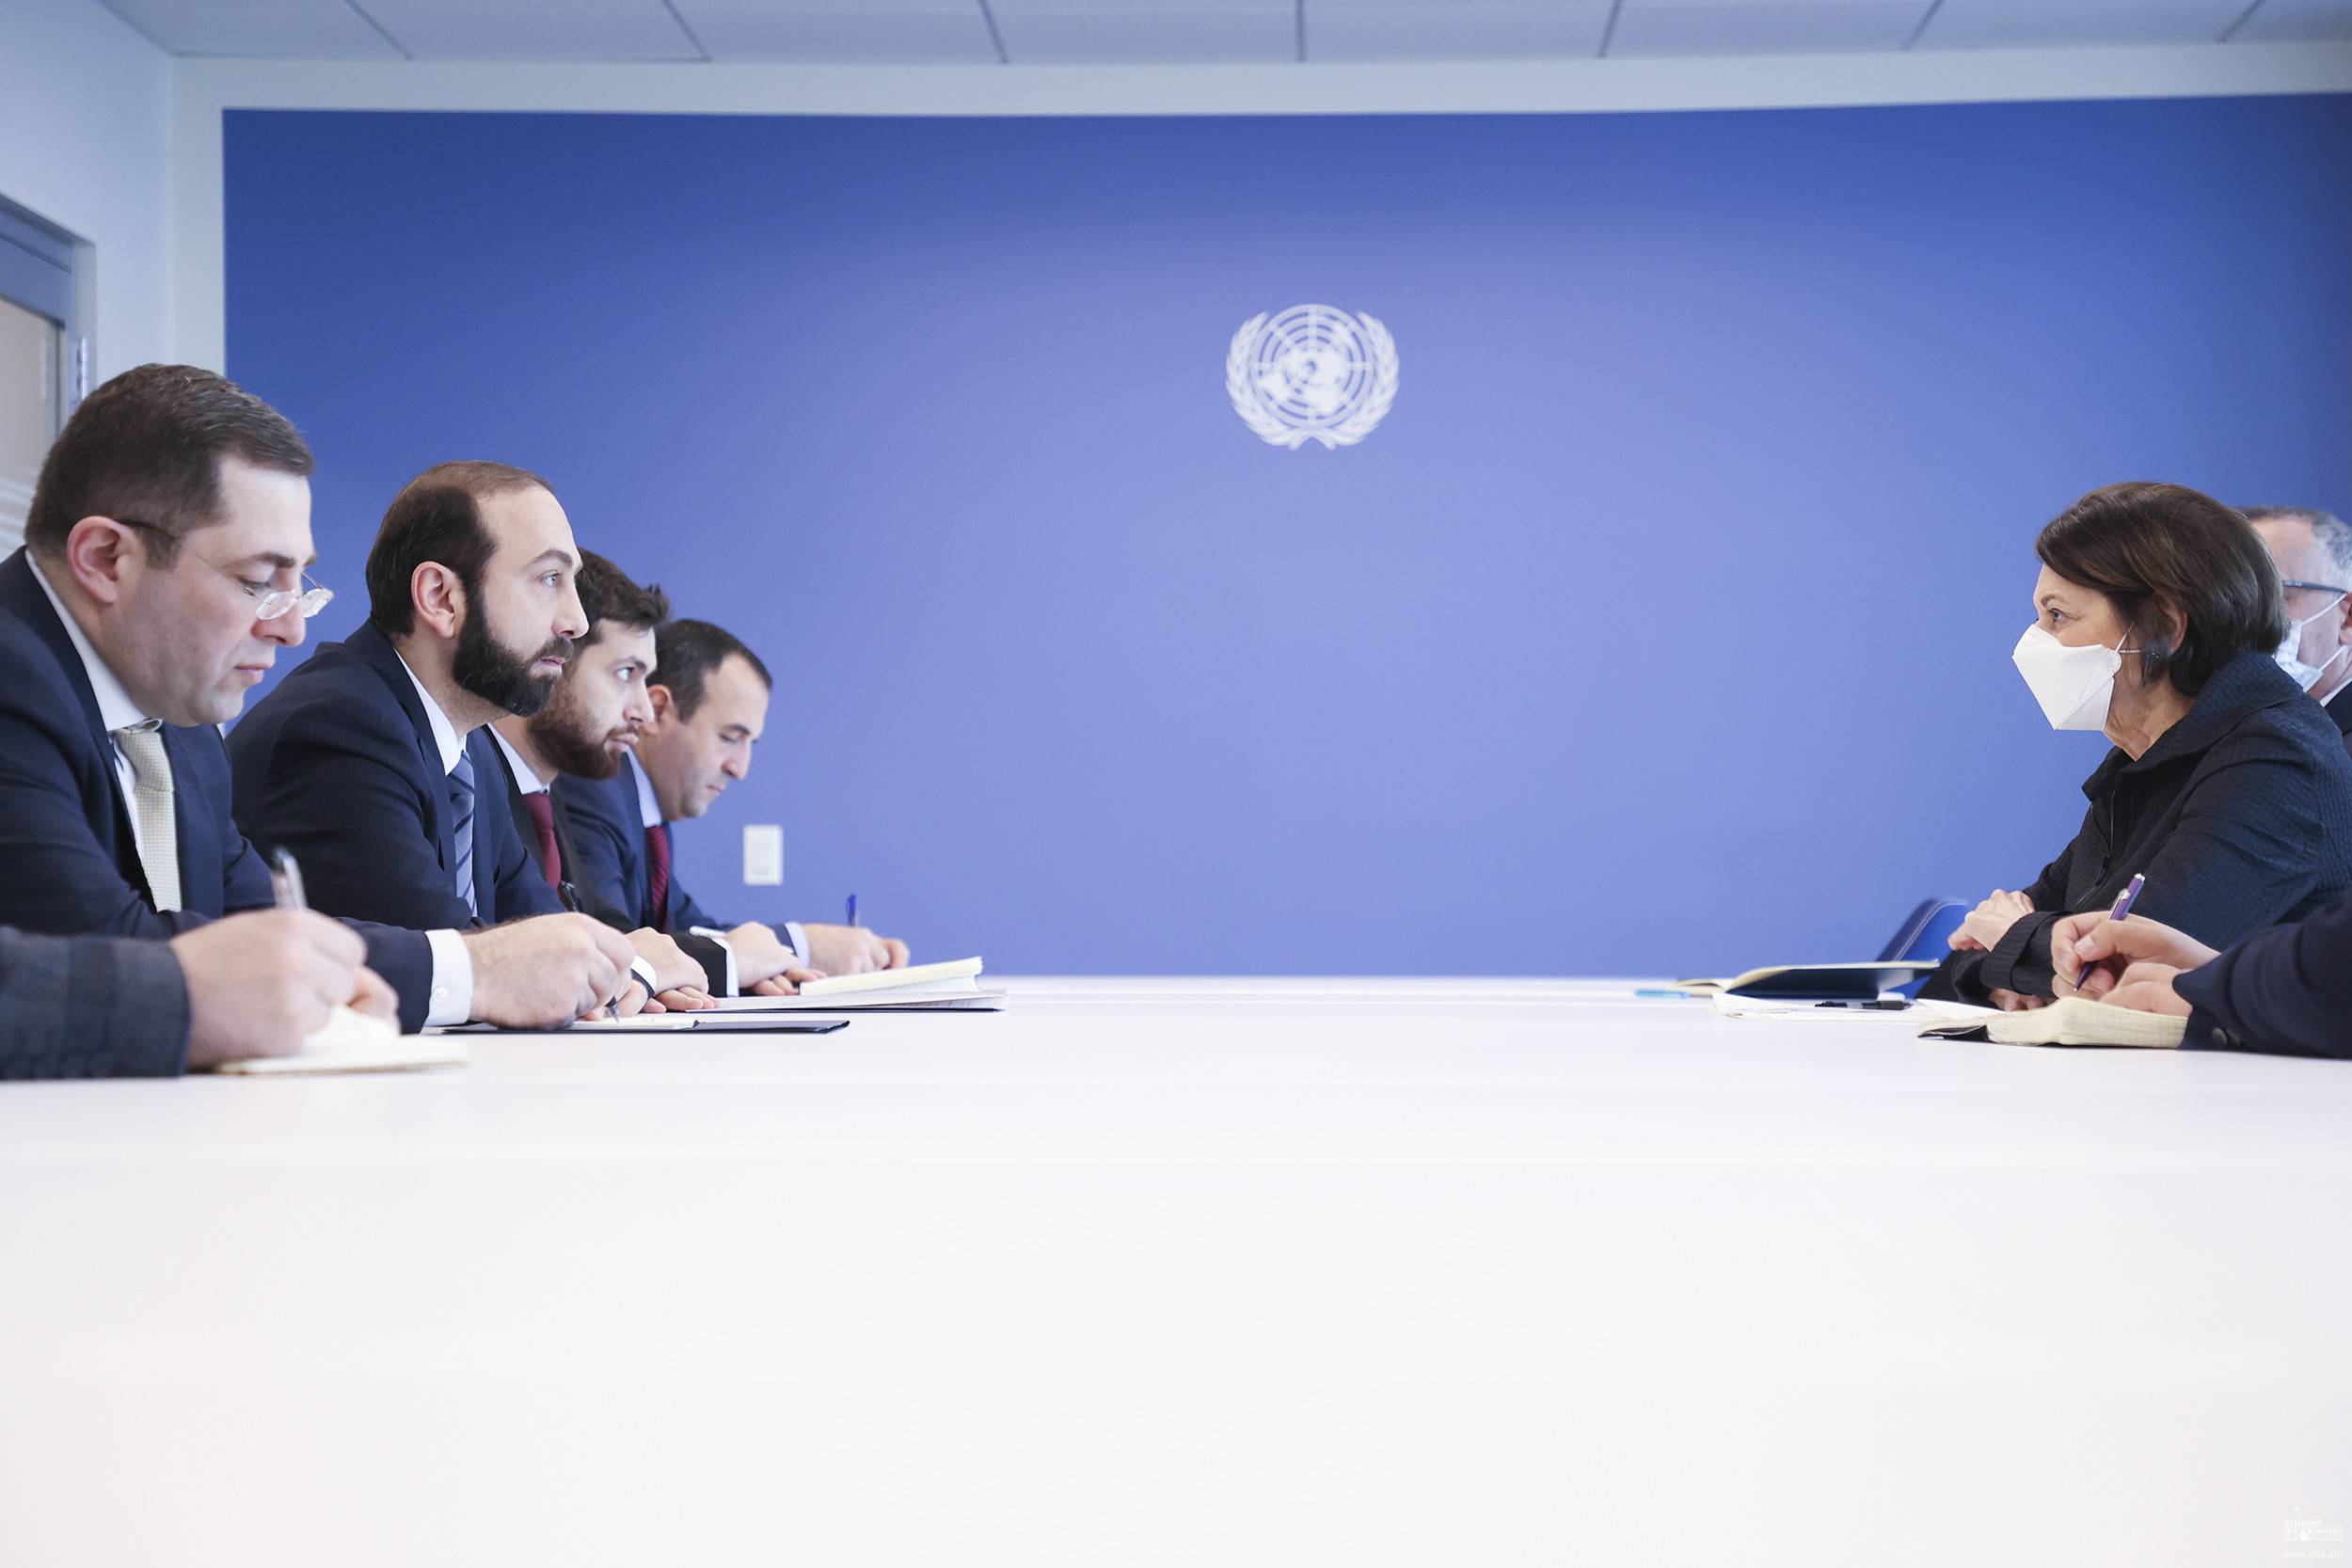 Միրզոյանը ՄԱԿ-ի գլխավոր քարտուղարի տեղակալի հետ հանդիպմանը շեշտել է միջազգային կառույցների կողմից համարժեք և հասցեական արձագանքի կարևորությունը